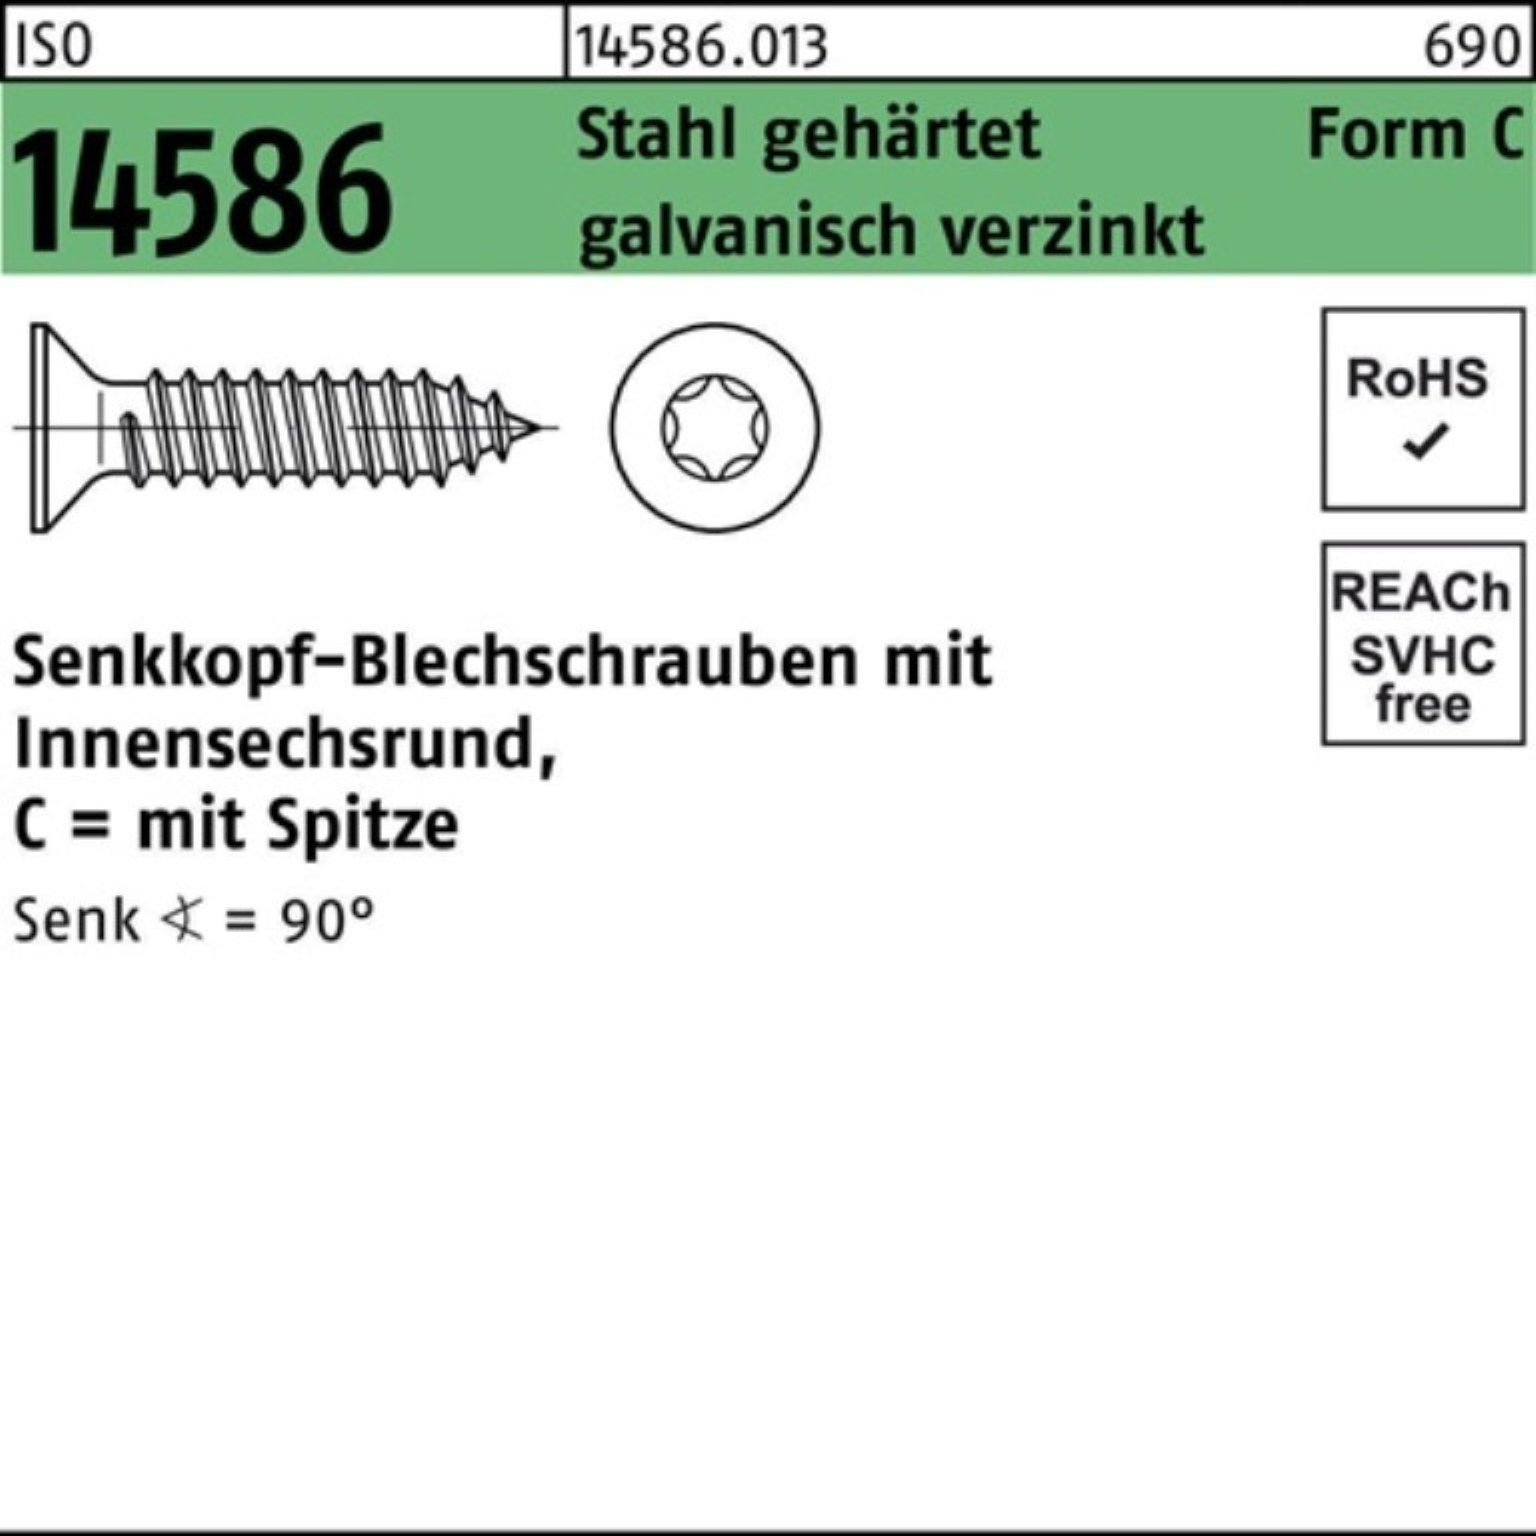 Reyher Schraube 500er Pack Senkblechschraube 4,2x -C geh 50 Stahl 14586 ISO ISR/Spitze